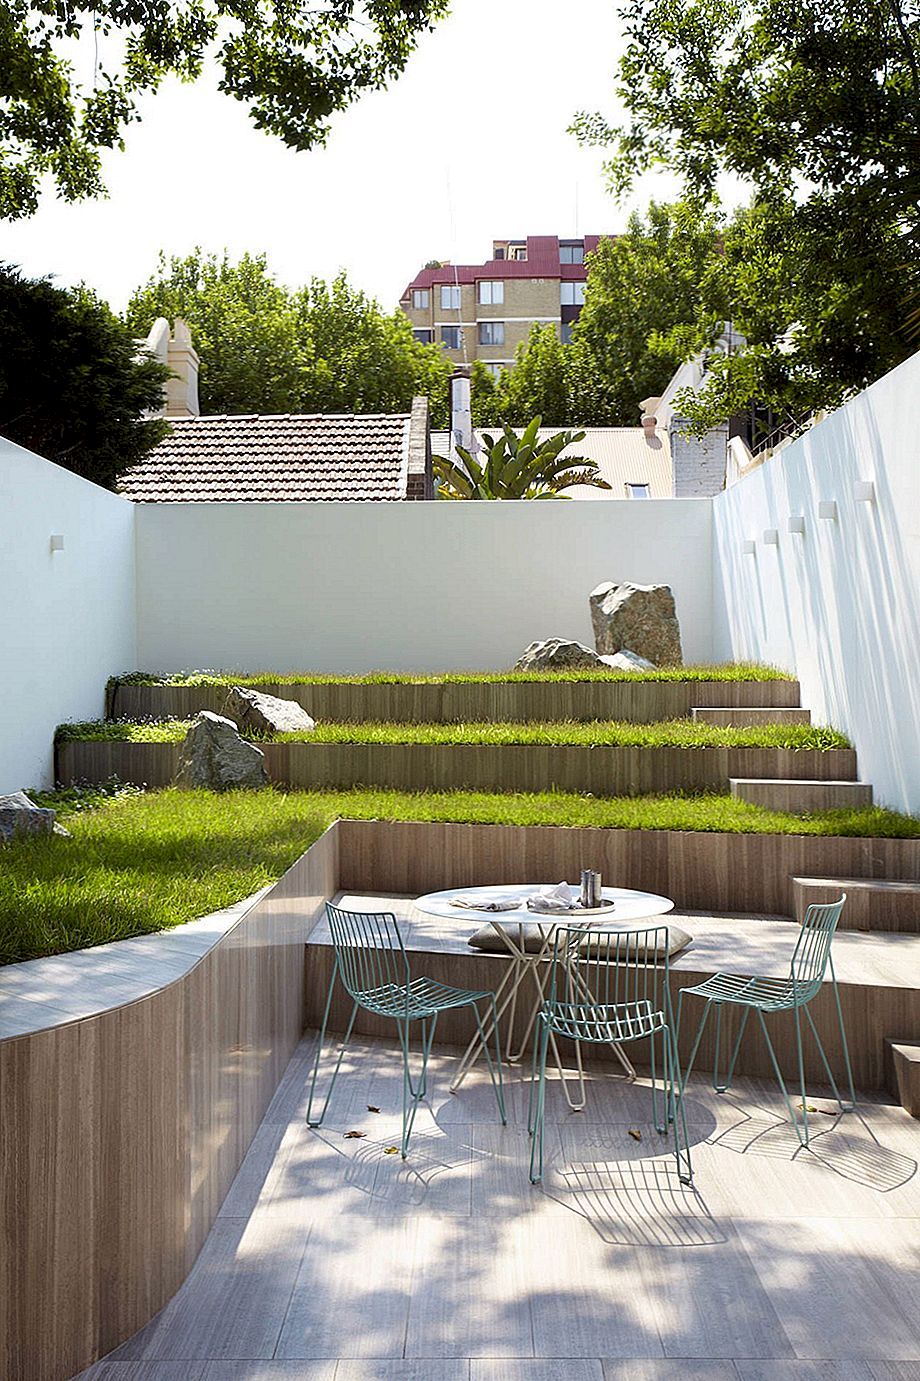 Terrasvormige tuinen - Hoe schoonheid naar het volgende niveau te brengen